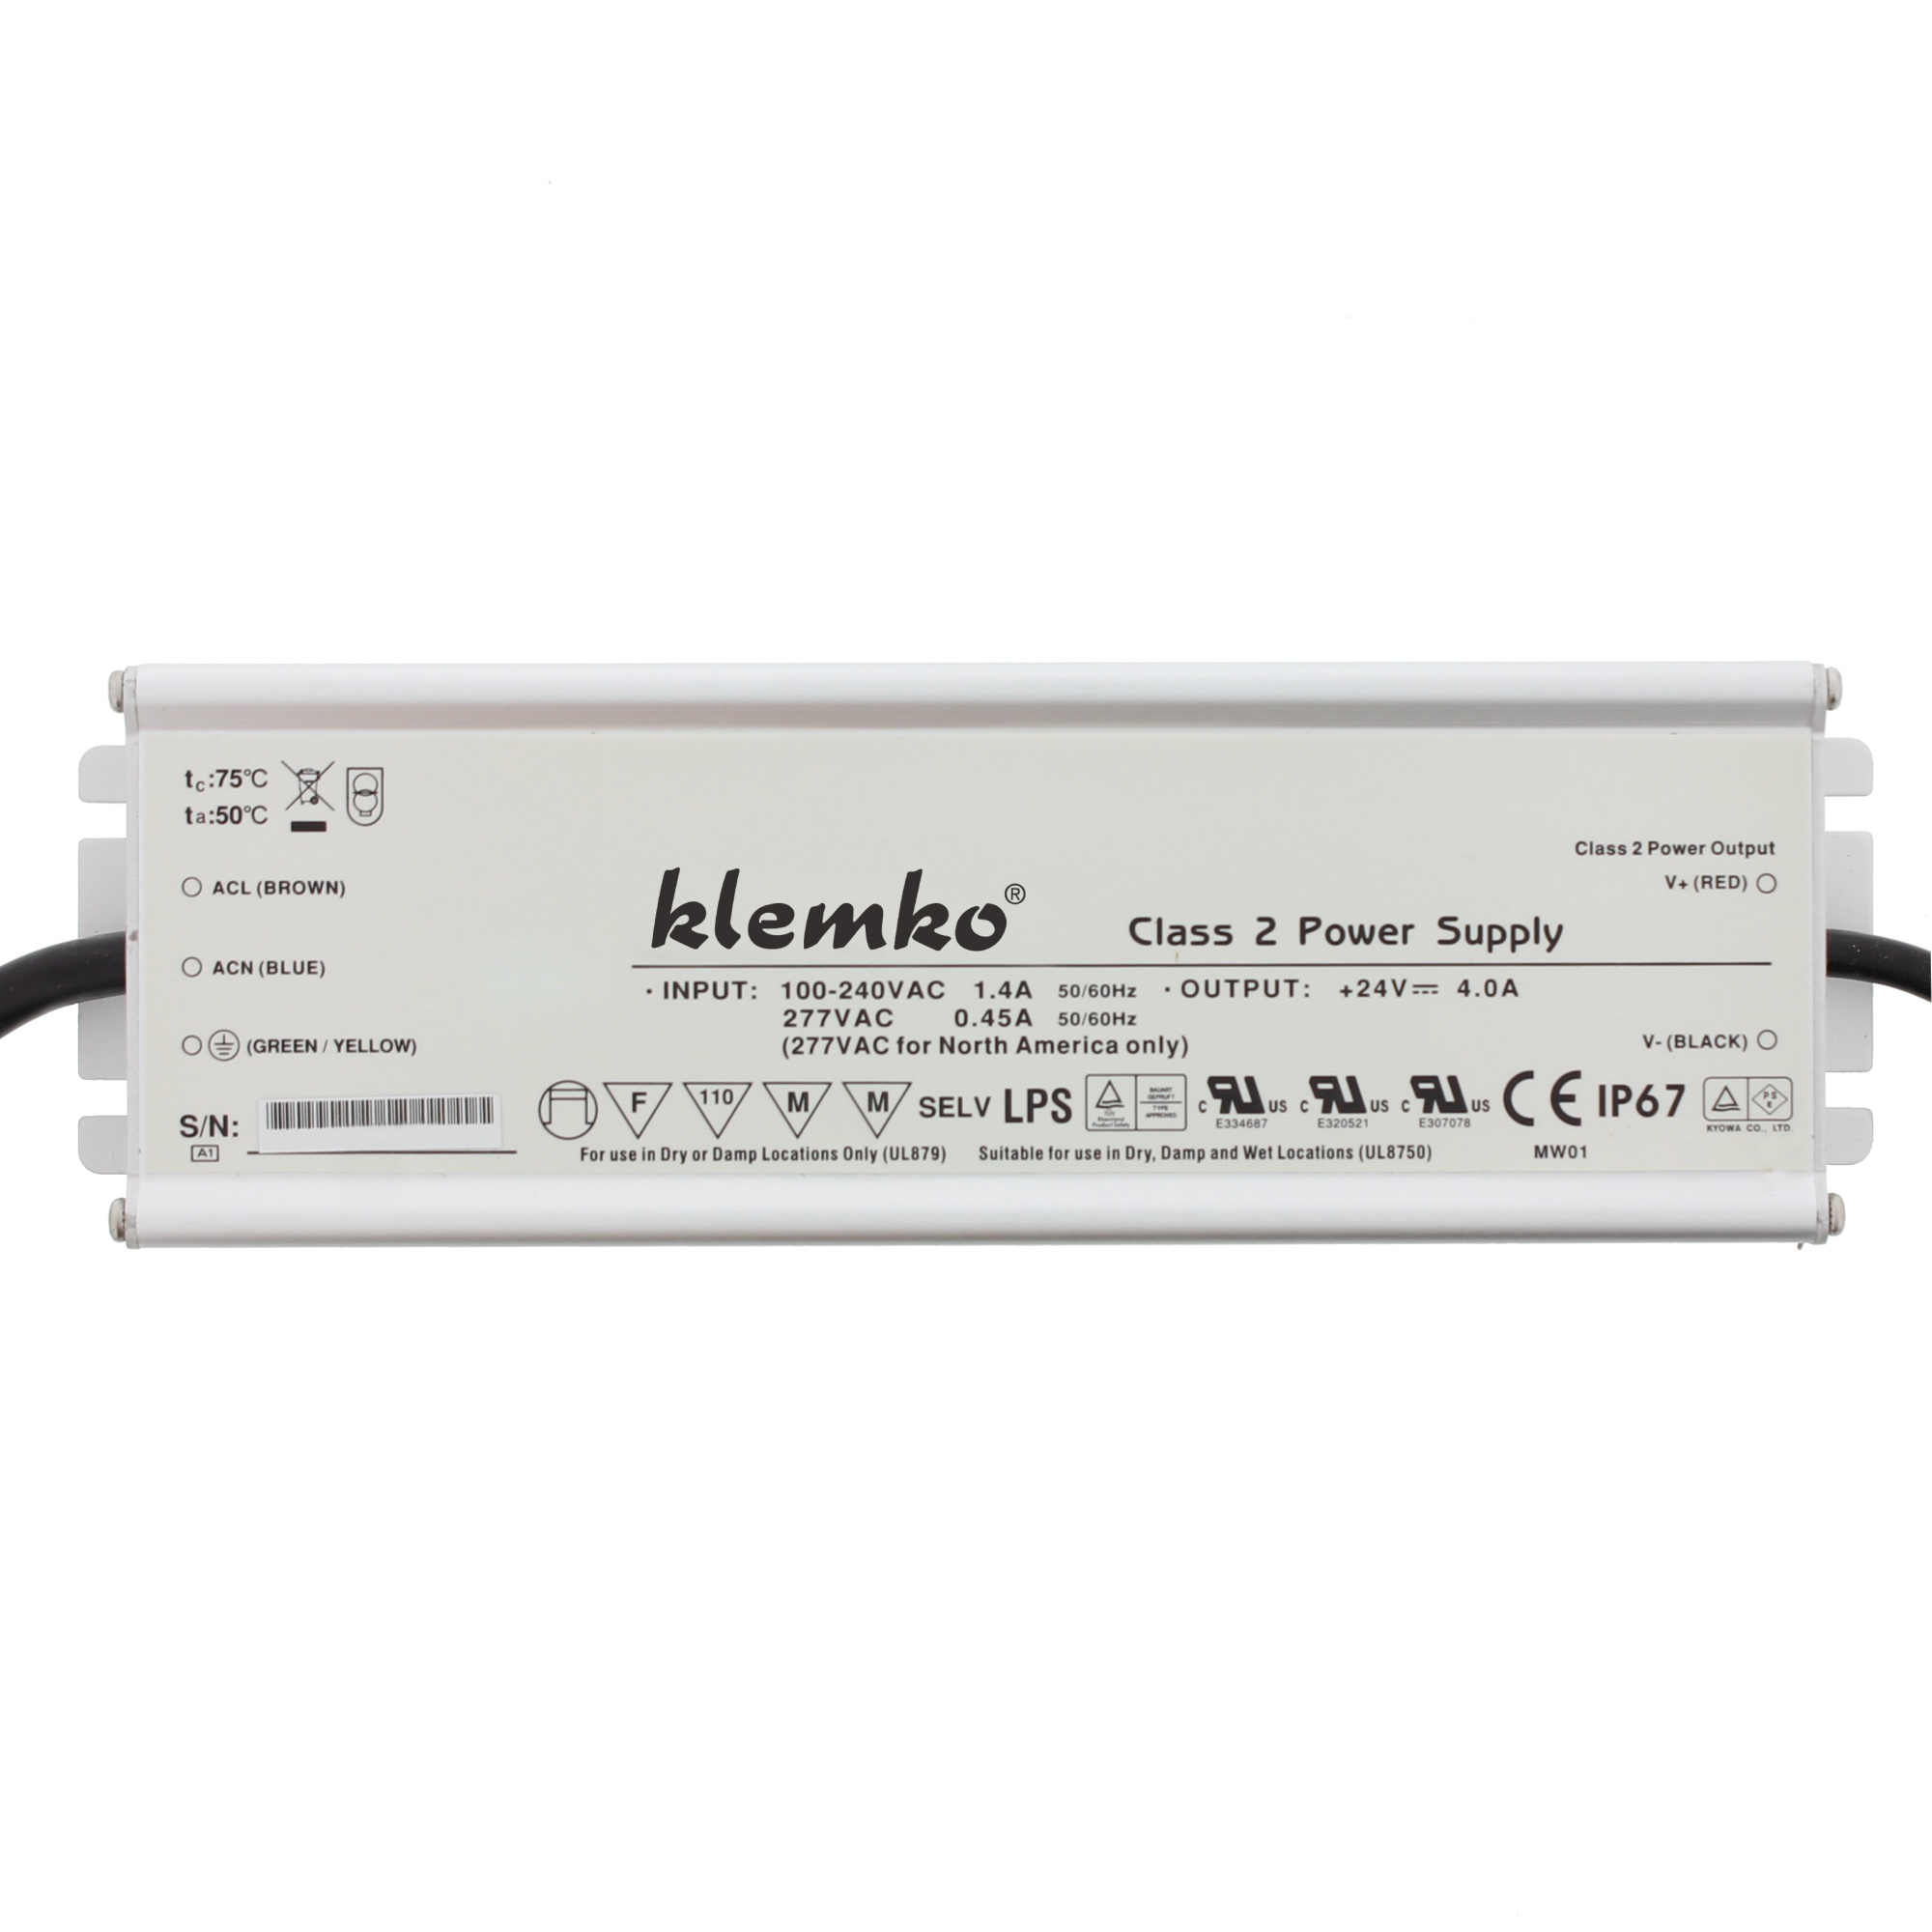 KLEMKO 860190 Led Driver Constante Spanning LB-LD-24V-100WD Leddriver IP-67 constante spanning 24V. Pmax = 100W.